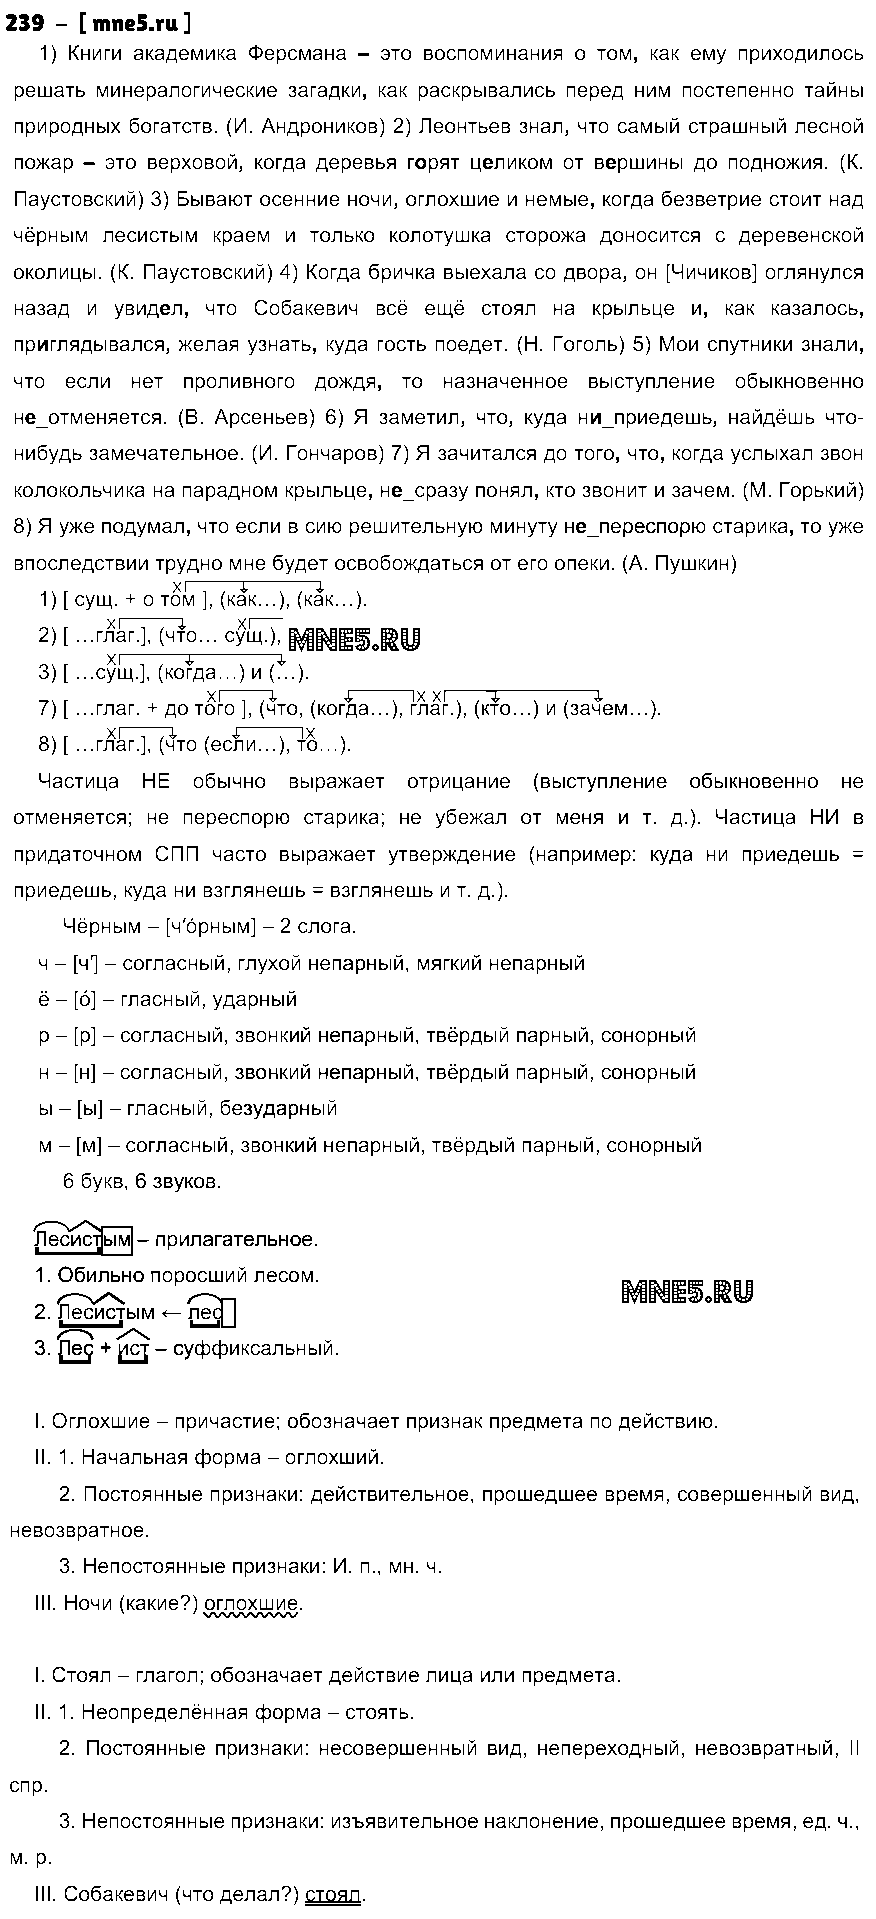 ГДЗ Русский язык 9 класс - 239